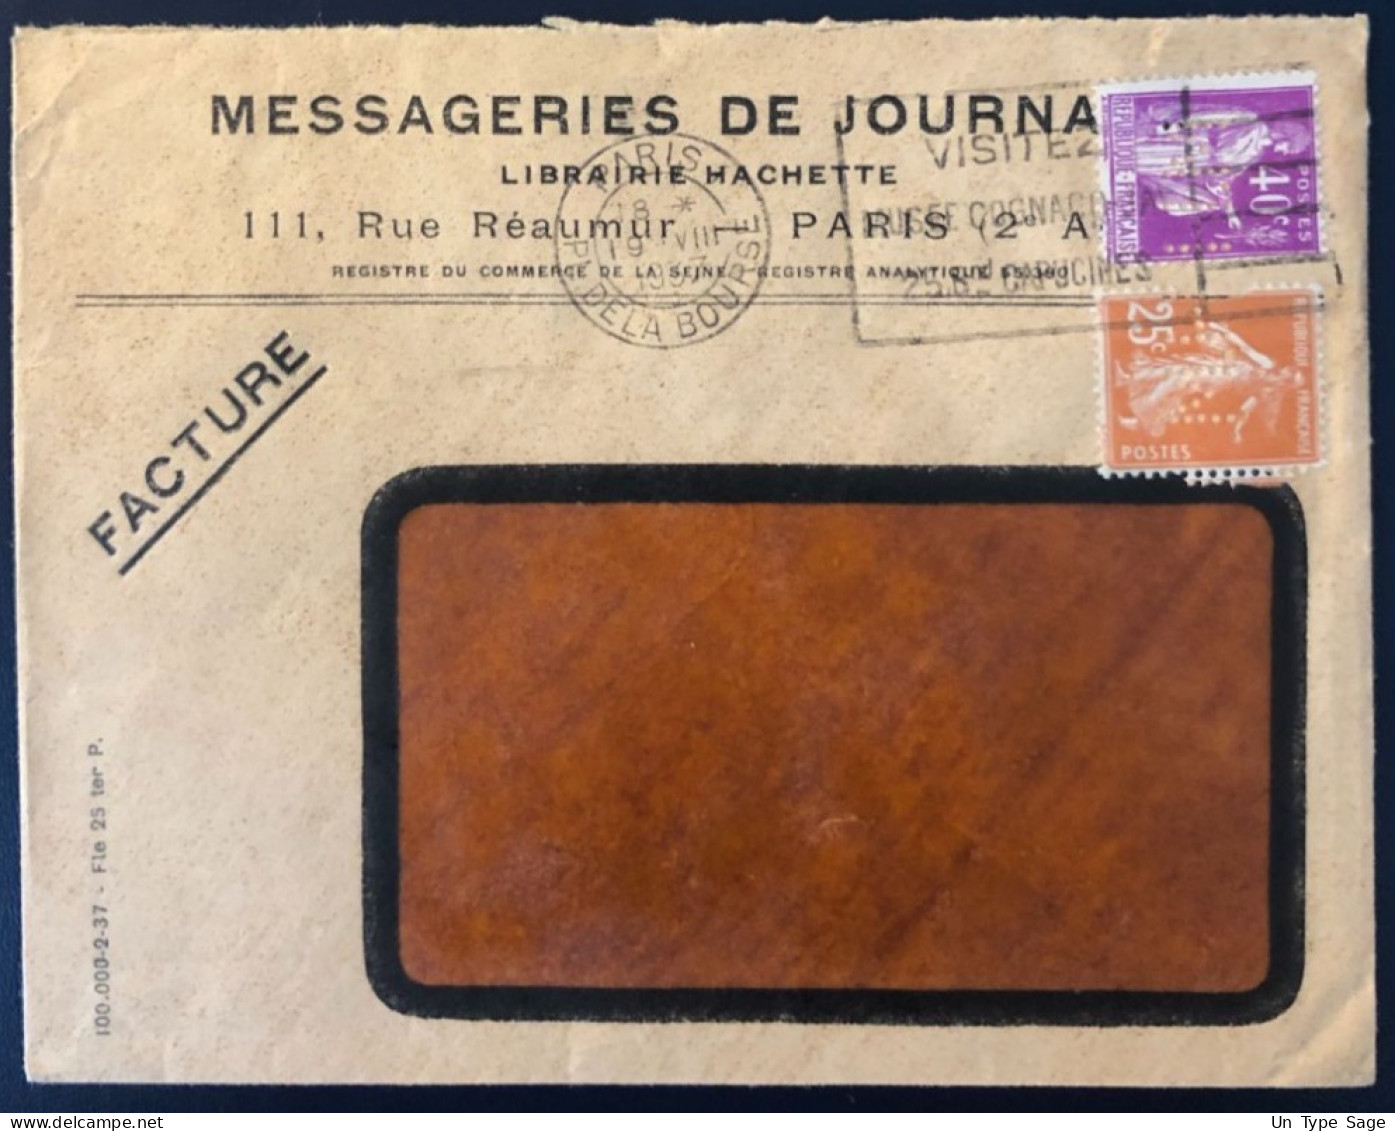 France, Divers Sur Enveloppe, Perforé MESSAGERIES DE JOURNAUX 1937  - (B1710) - Cartas & Documentos